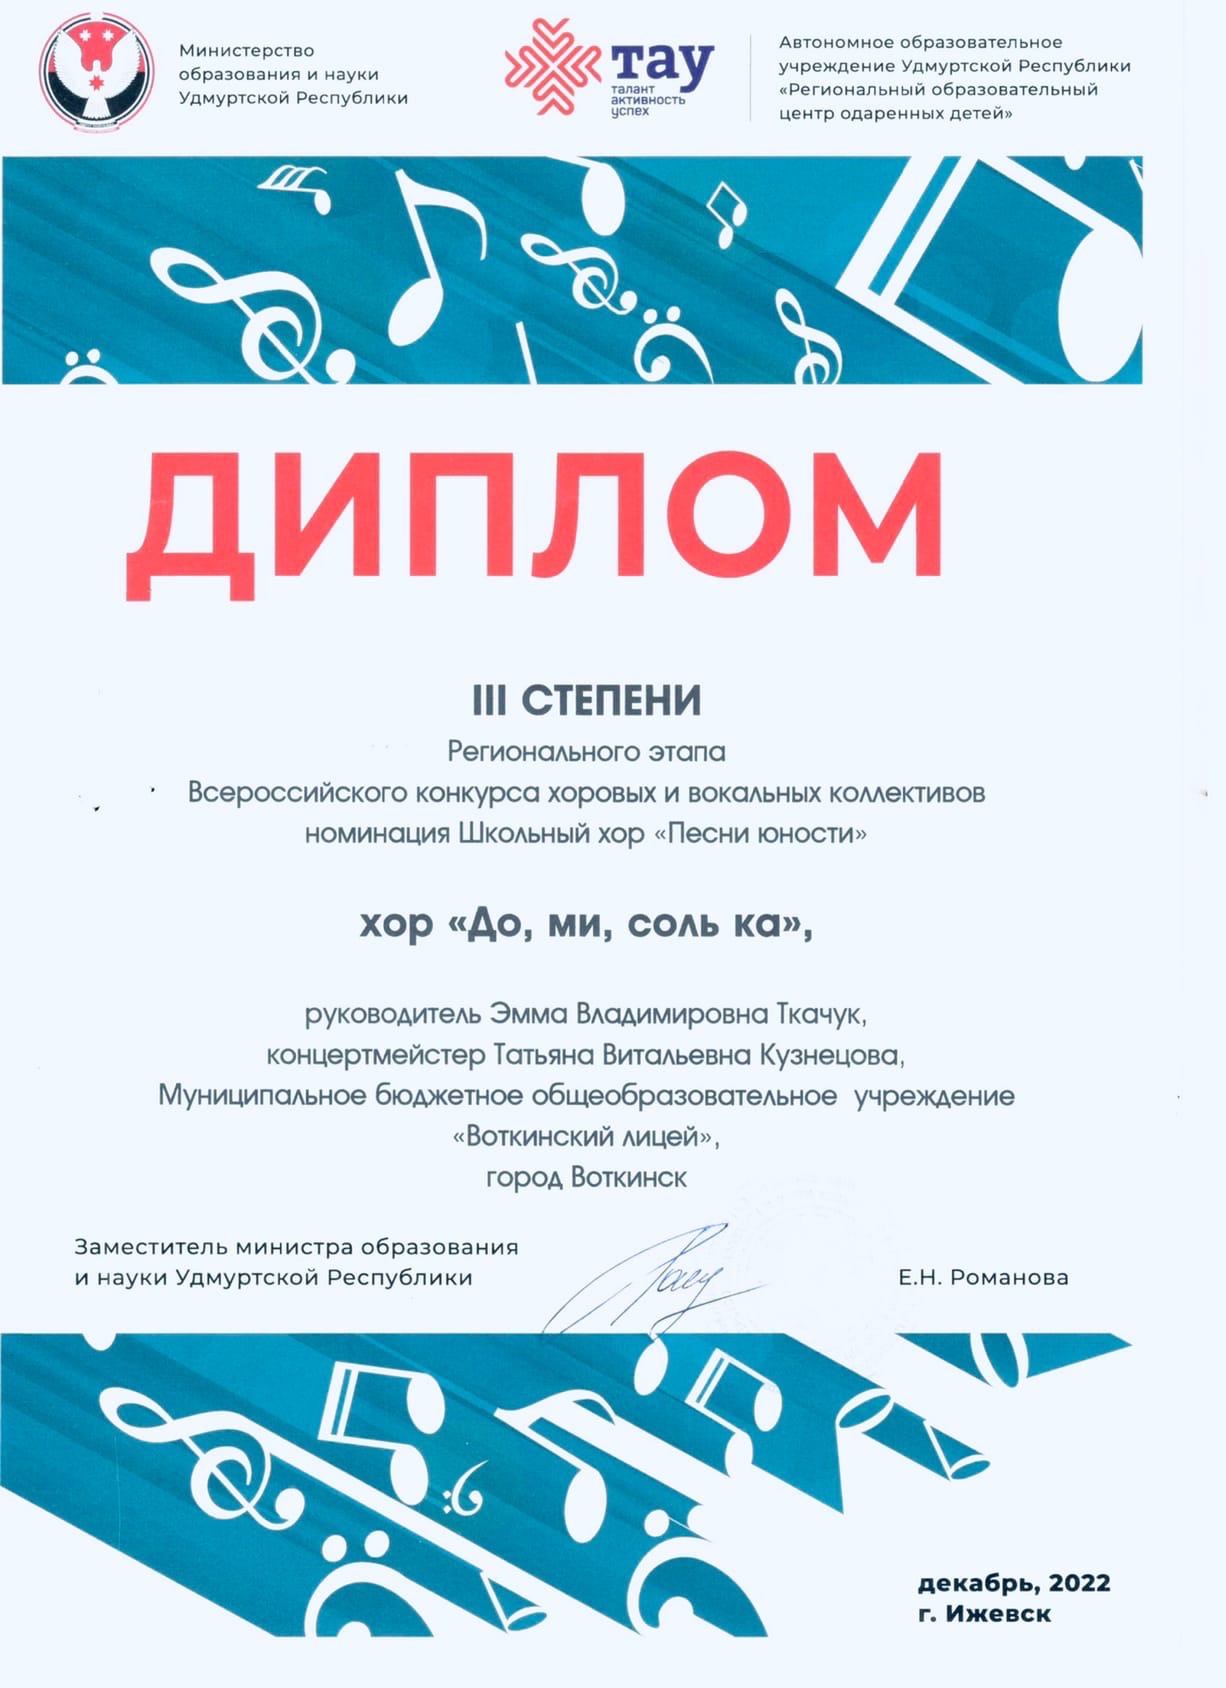 Региональный этап Всероссийского конкурса хоровых и вокальных коллективов.